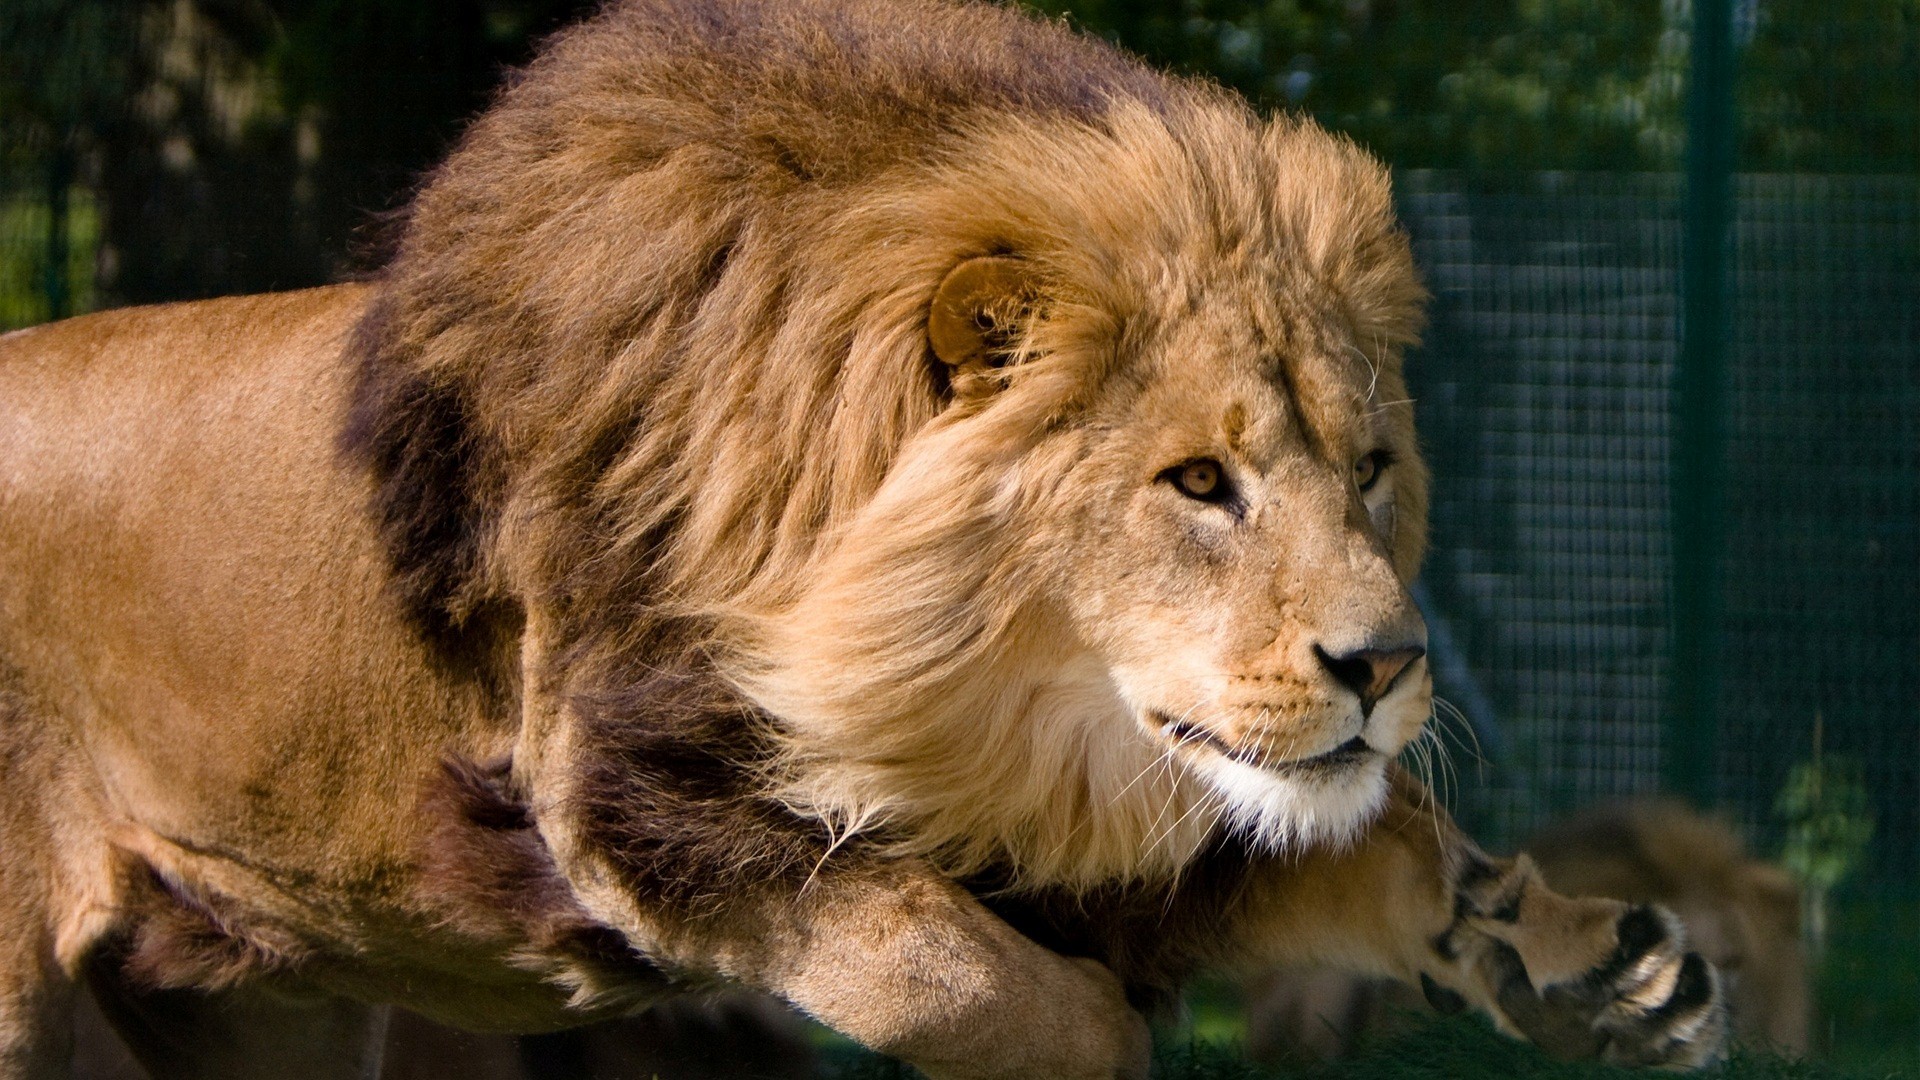 lion fonds d'écran hd 1920x1080,lion,faune,cheveux,animal terrestre,lion masai